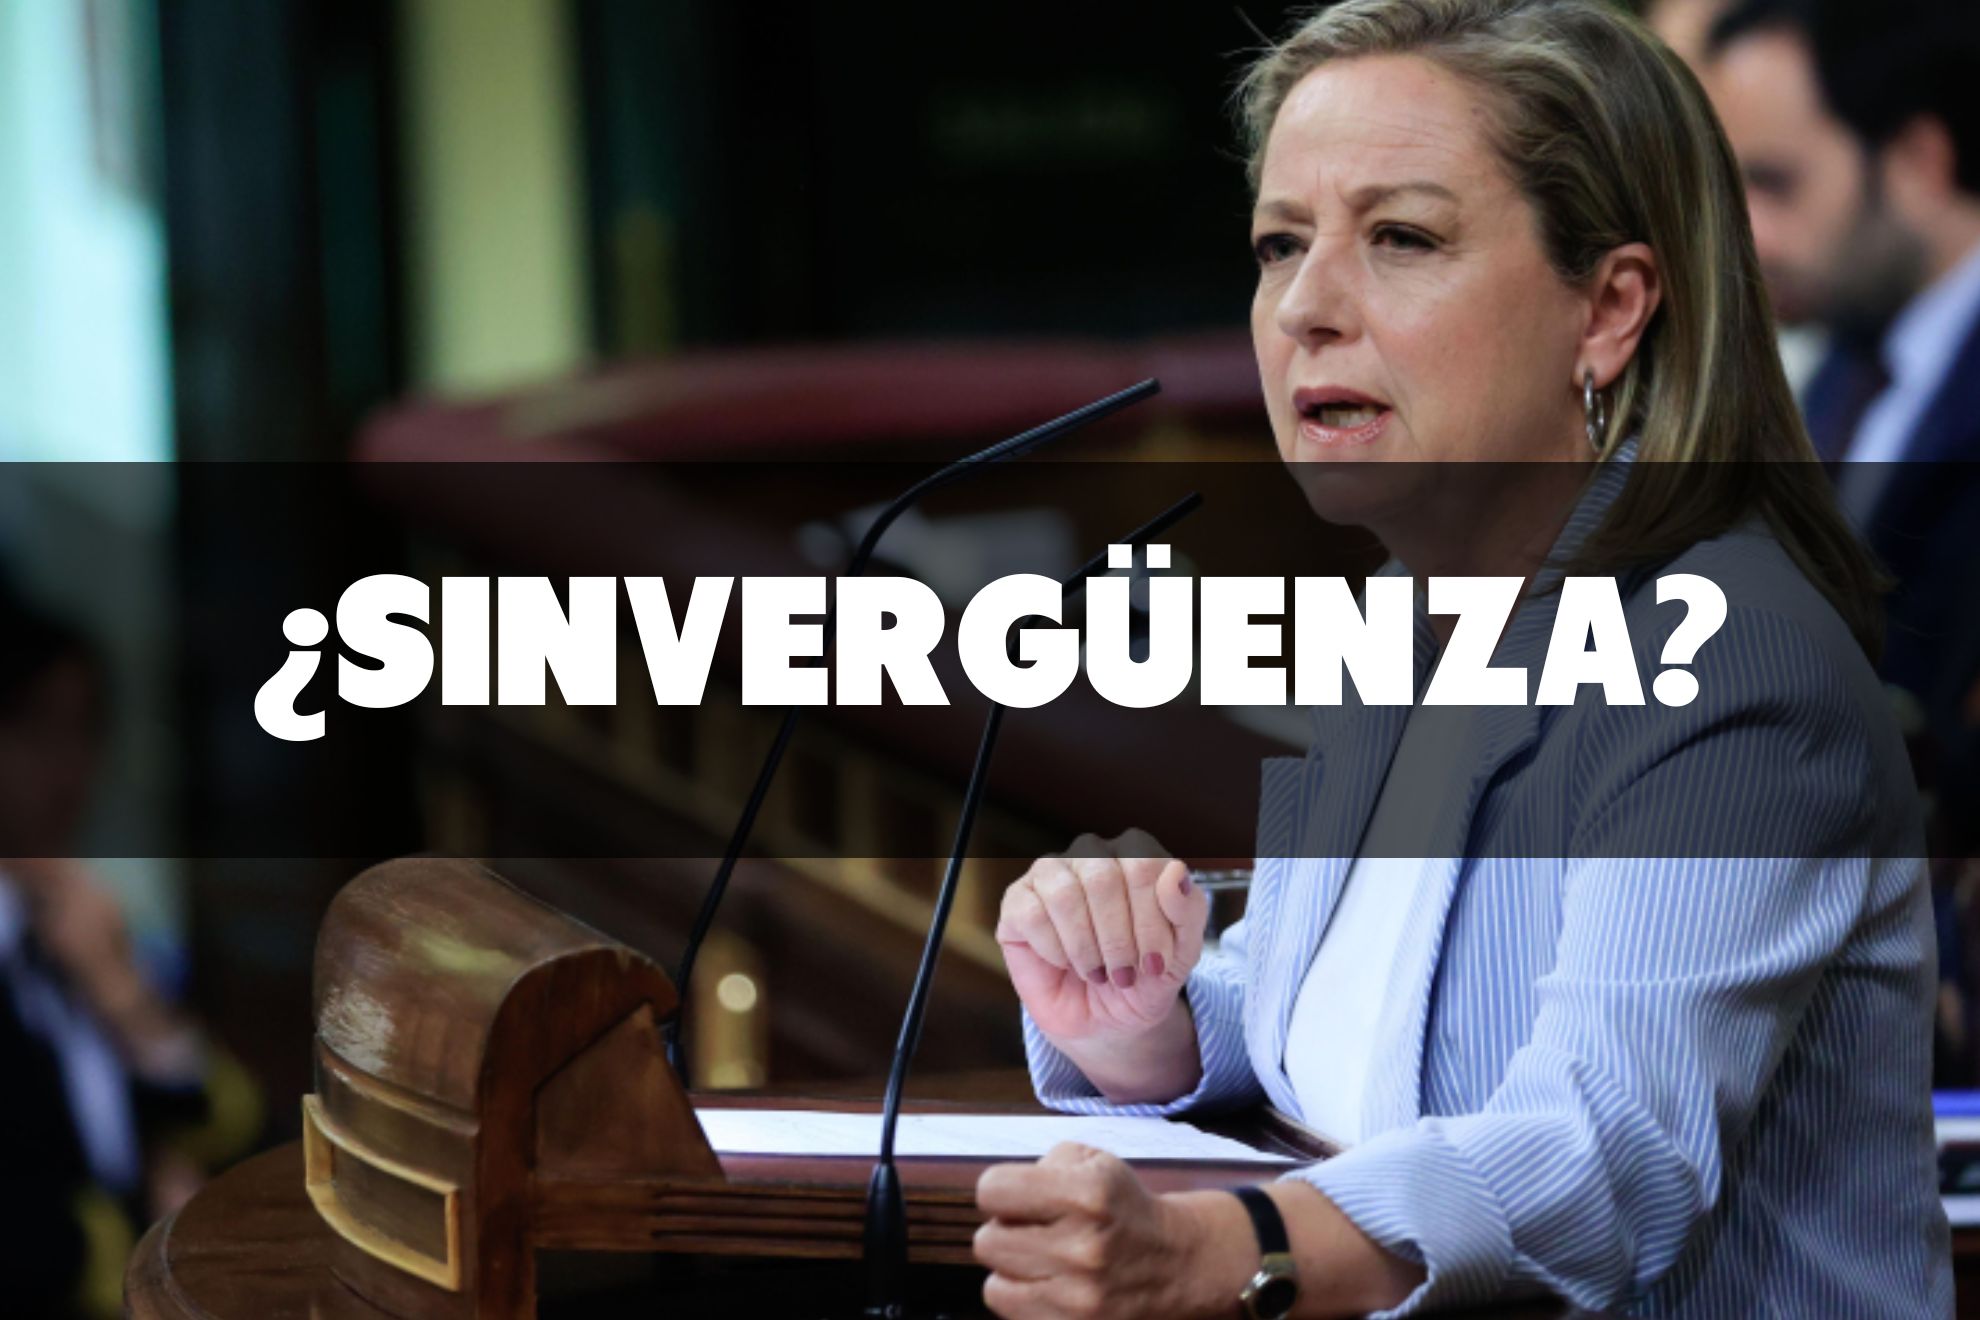 El ridículo de Ana Oramas, de Coalición Canaria, tras llamar sinvergüenza a Irene Montero